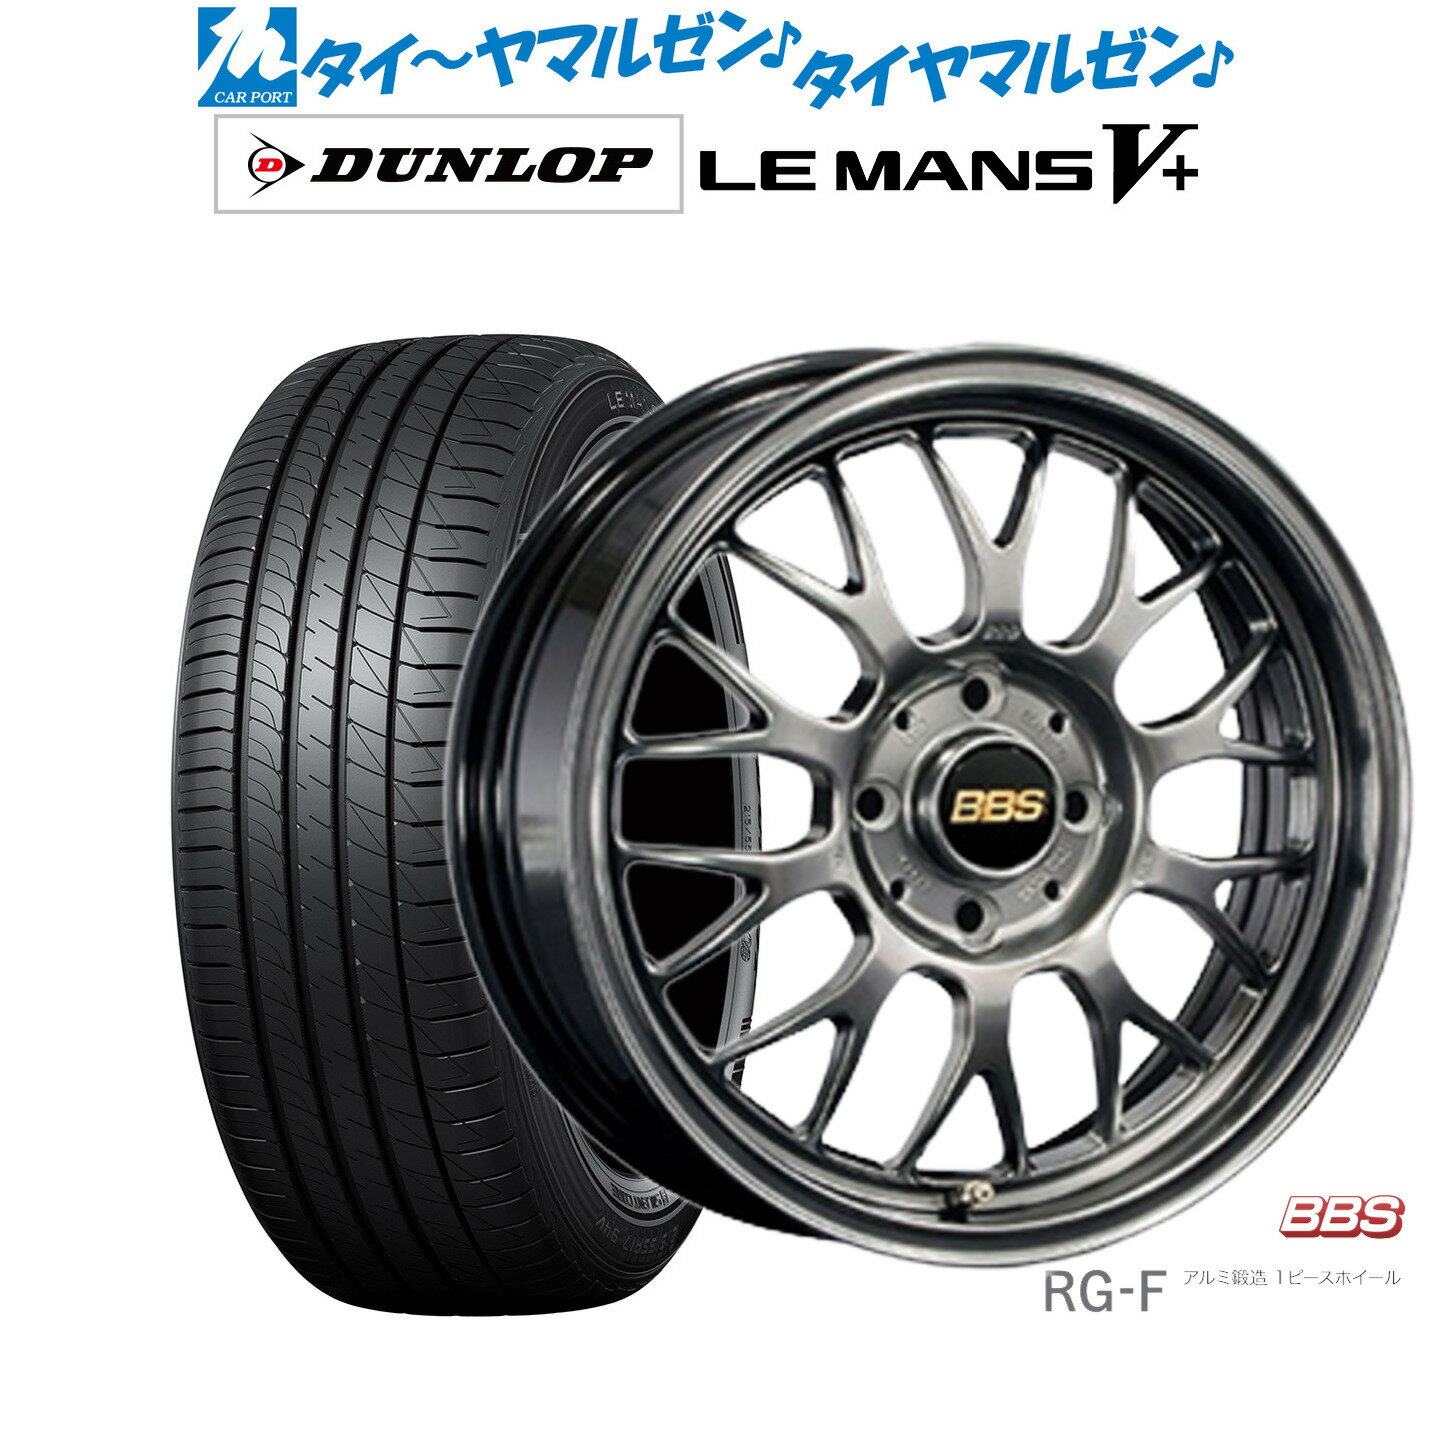 [5/18]ストアポイント3倍!!新品 サマータイヤ ホイール4本セットBBS JAPAN RG-F16インチ 5.5Jダンロップ LEMANS ルマン V+ (ファイブプラス)165/45R16